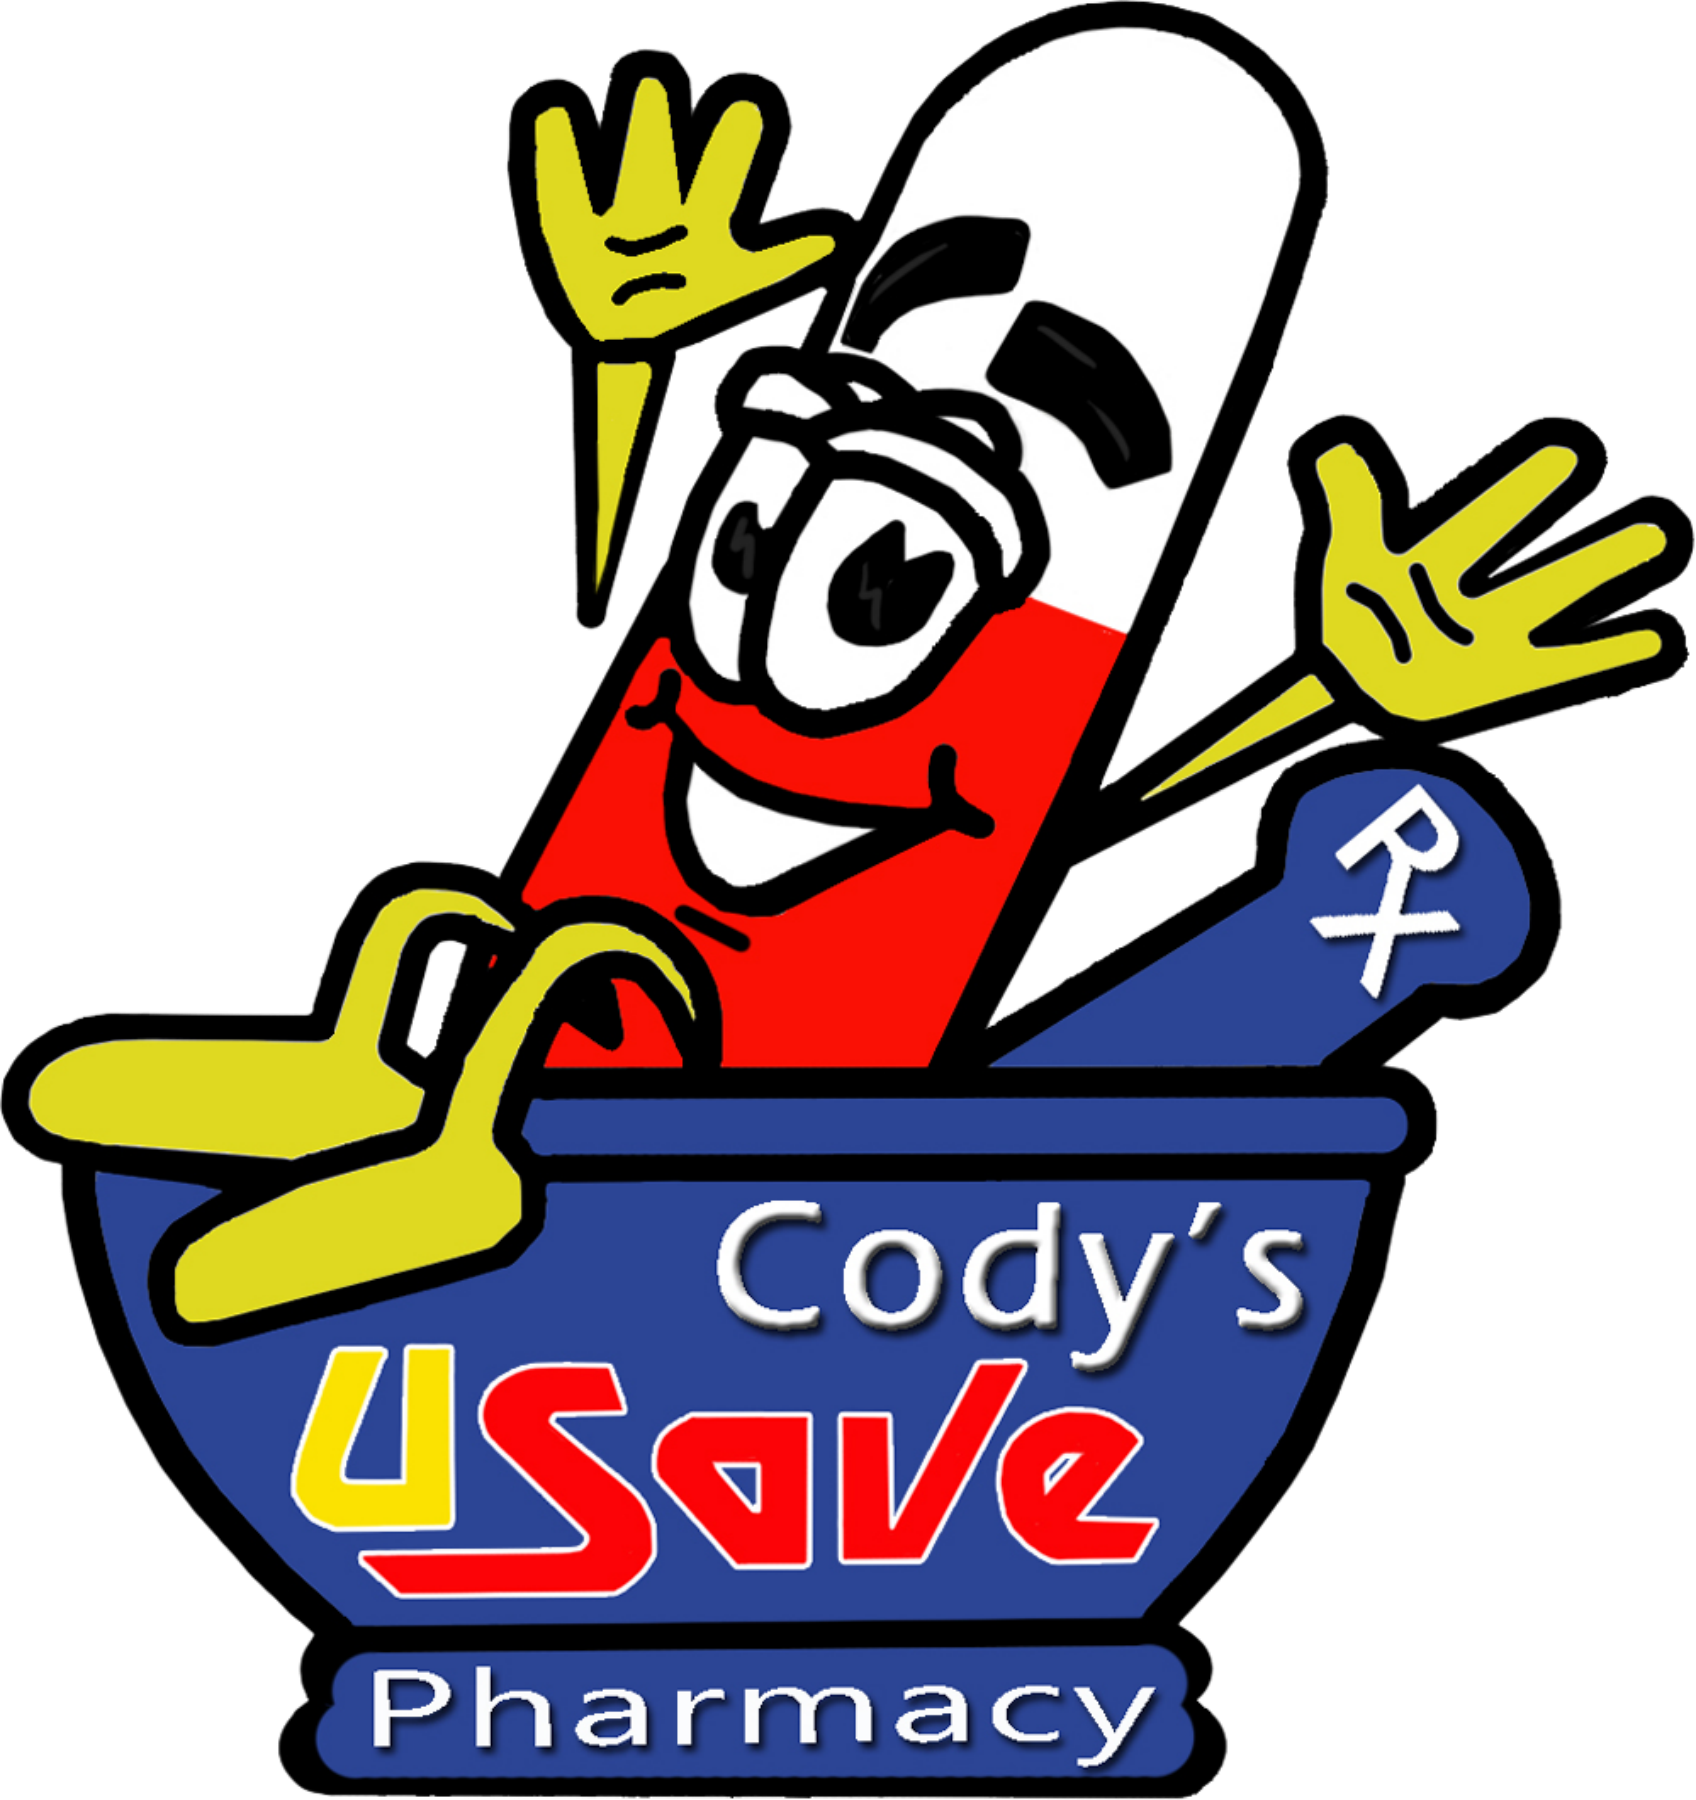 Cody's U-Save 